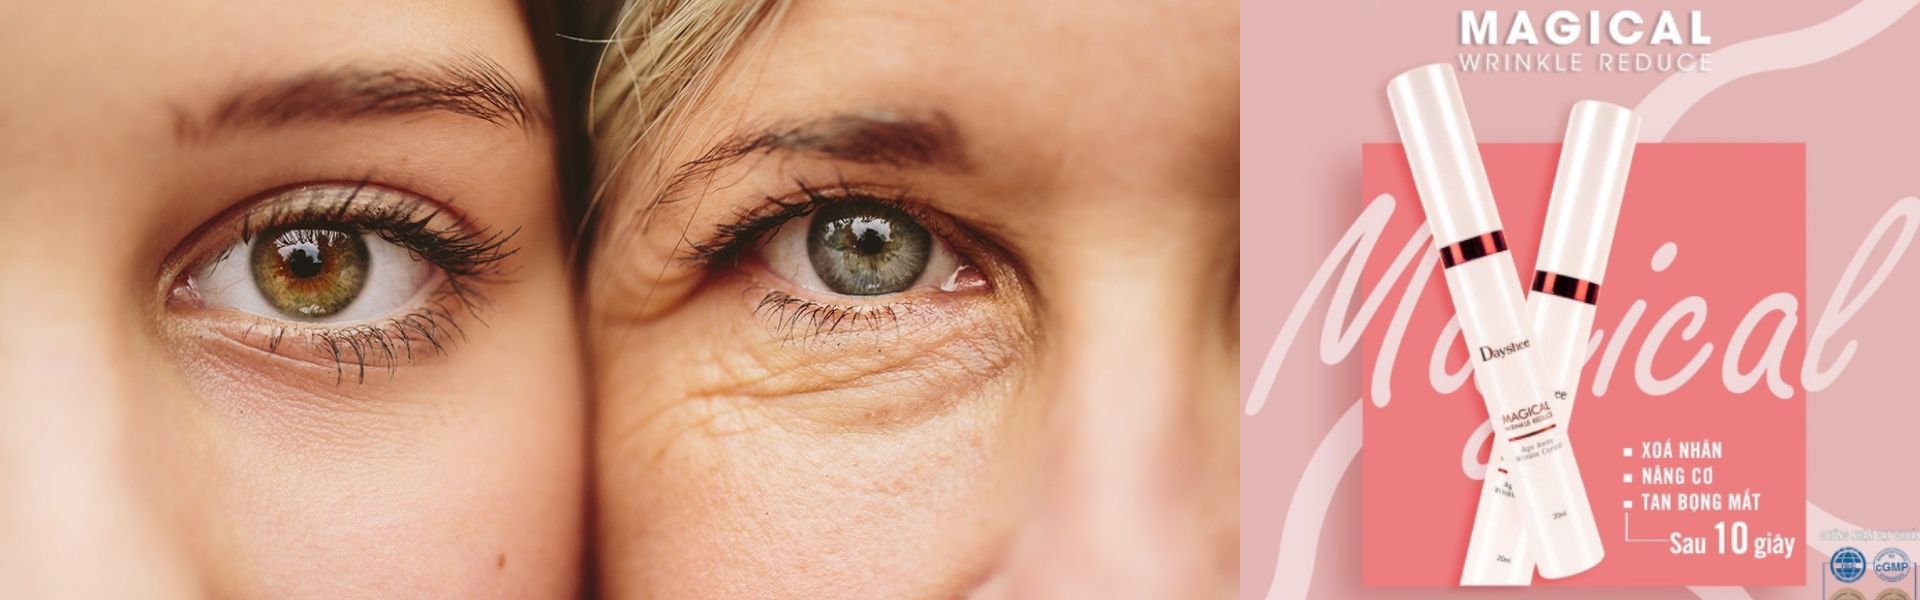 Kem xóa nhăn vùng mắt chống lão hóa cấp tốc hiệu quả